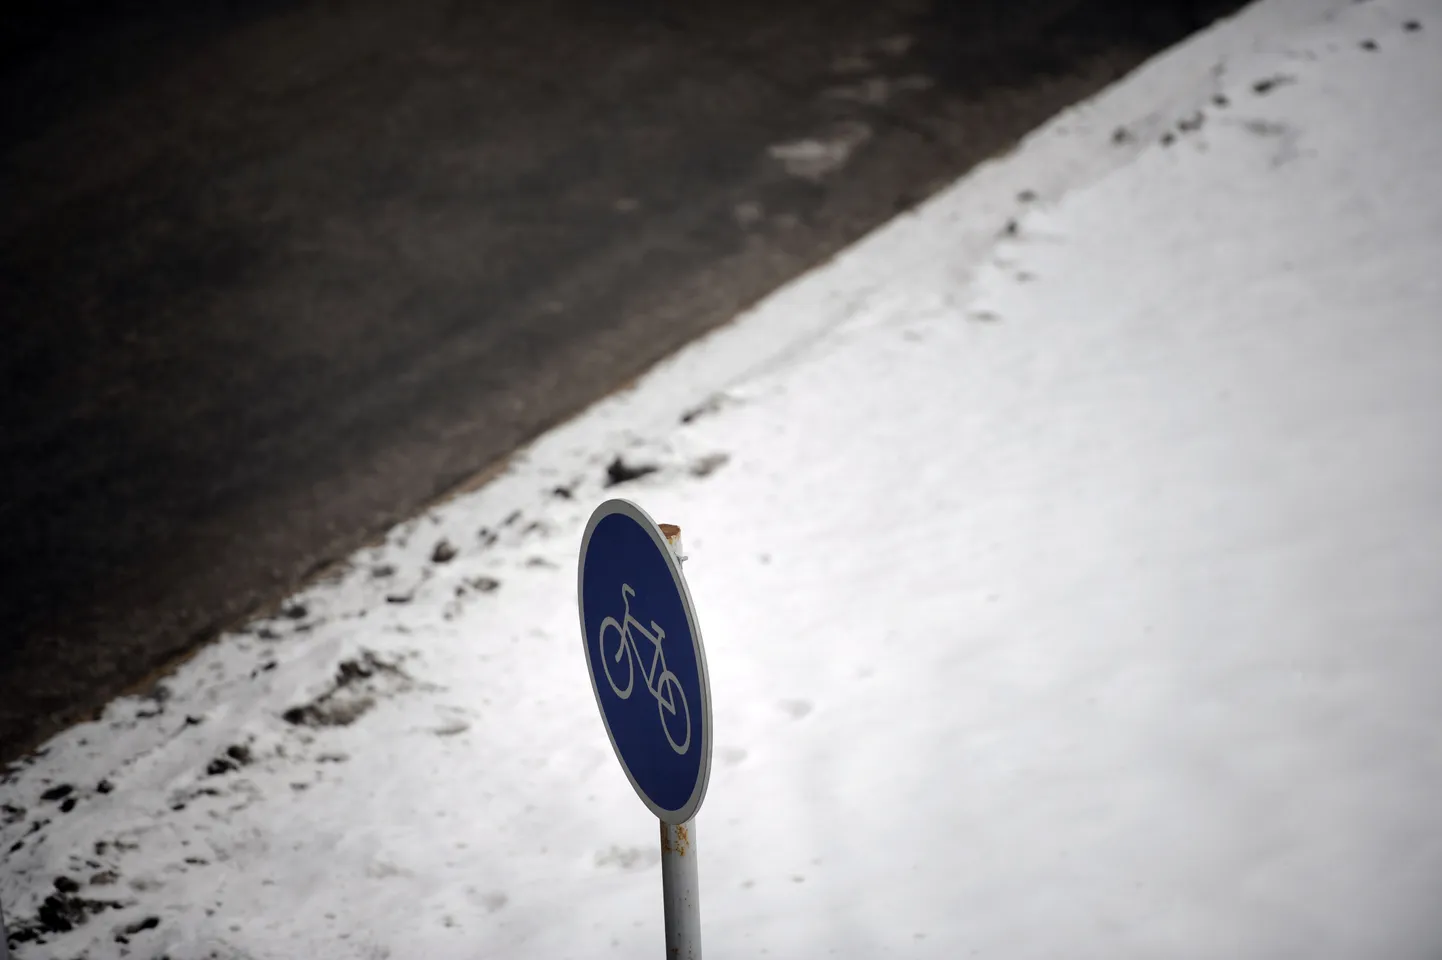 Liiklusmärk lumisel teepervel.